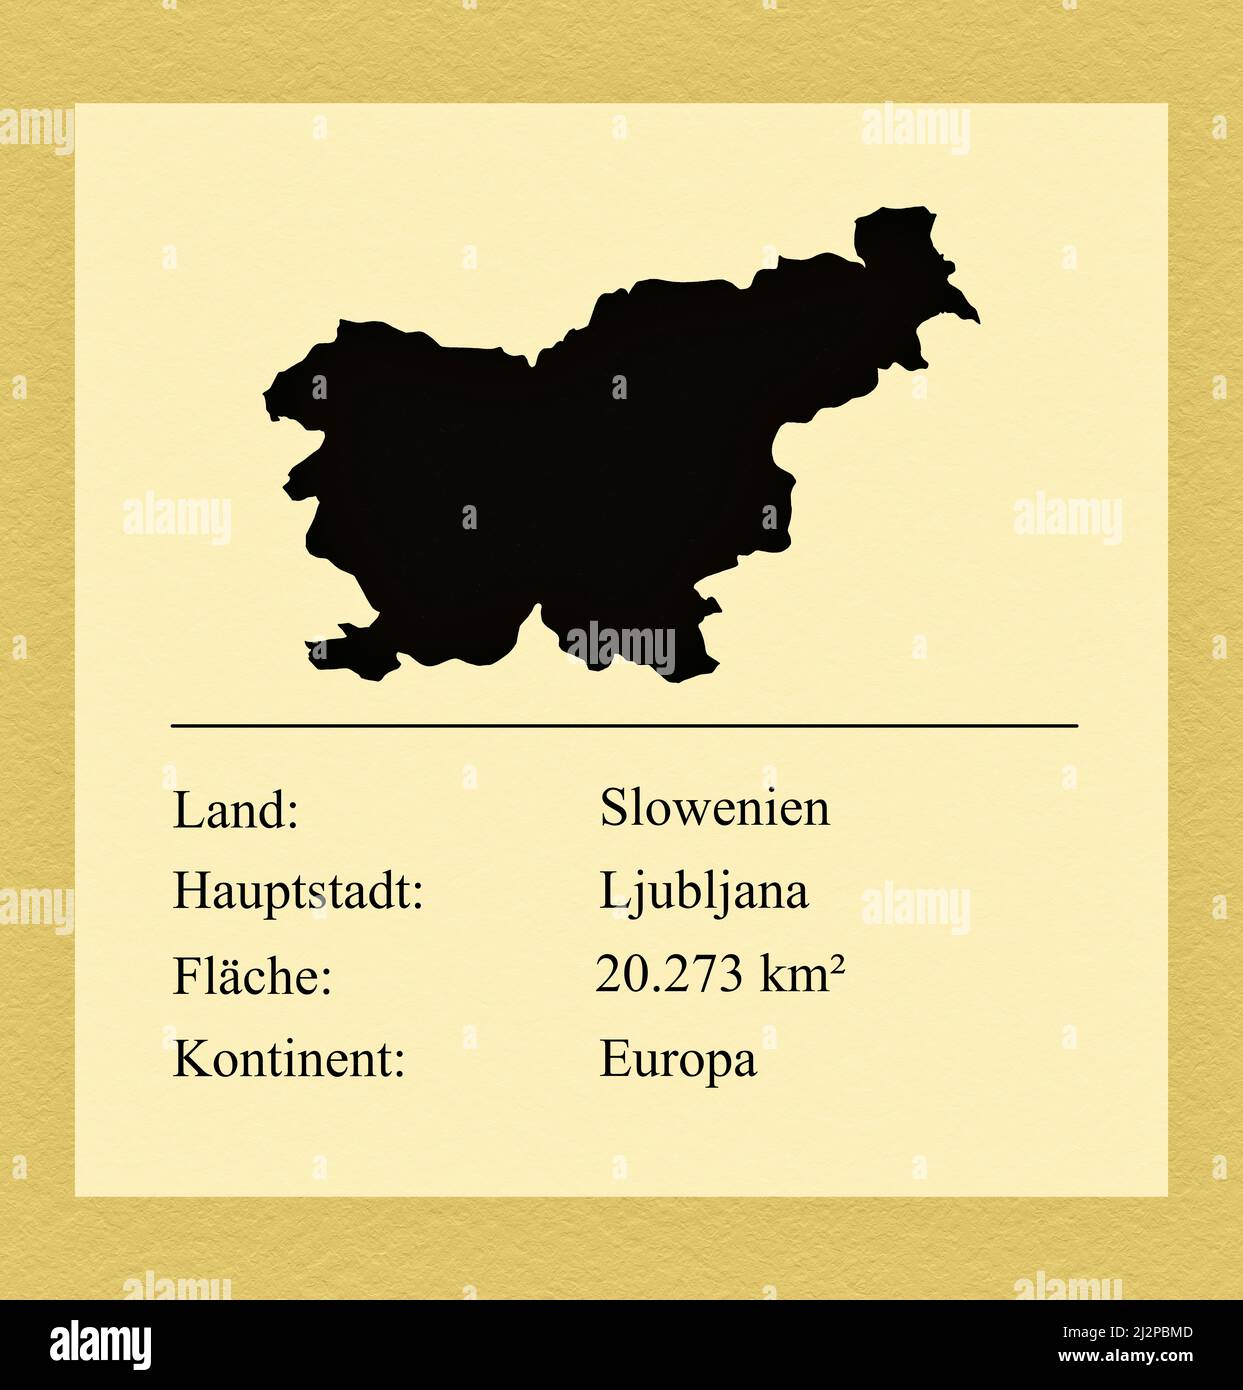 Umrisse des Landes Slowenien, darunter ein kleiner Steckbrief mit Ländernamen, Hauptstadt, Fläche und Kontinent Stock Photo